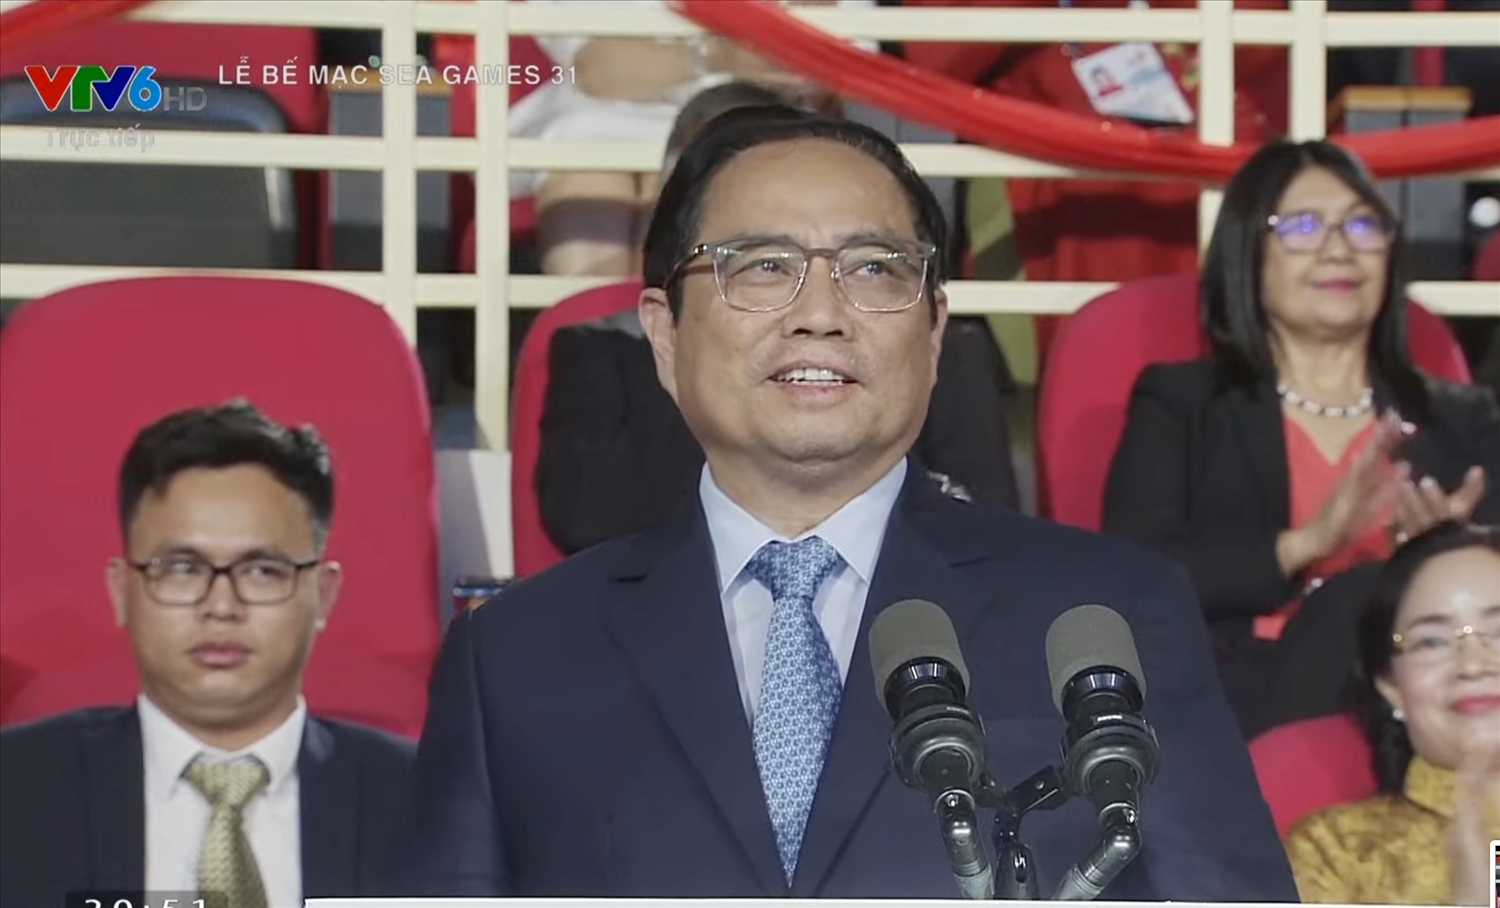 Thủ tướng Phạm Minh Chính tuyên bố Bế mạc SEA Games 31 (Ảnh chụp qua màn hình)